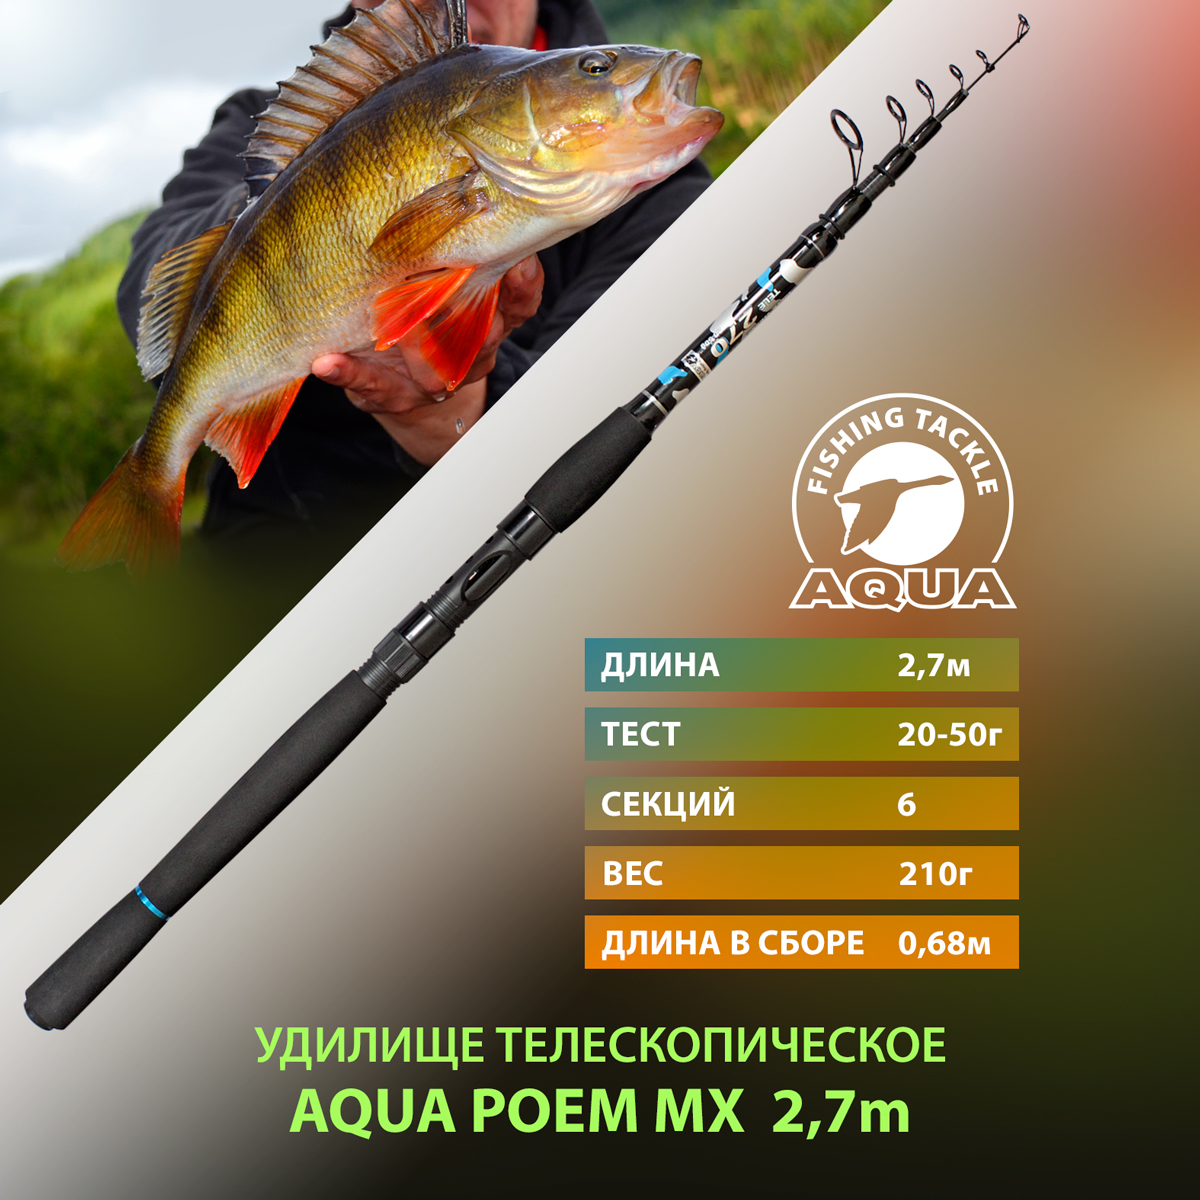 Удилище телескопическое для рыбалки AQUA POEM MX